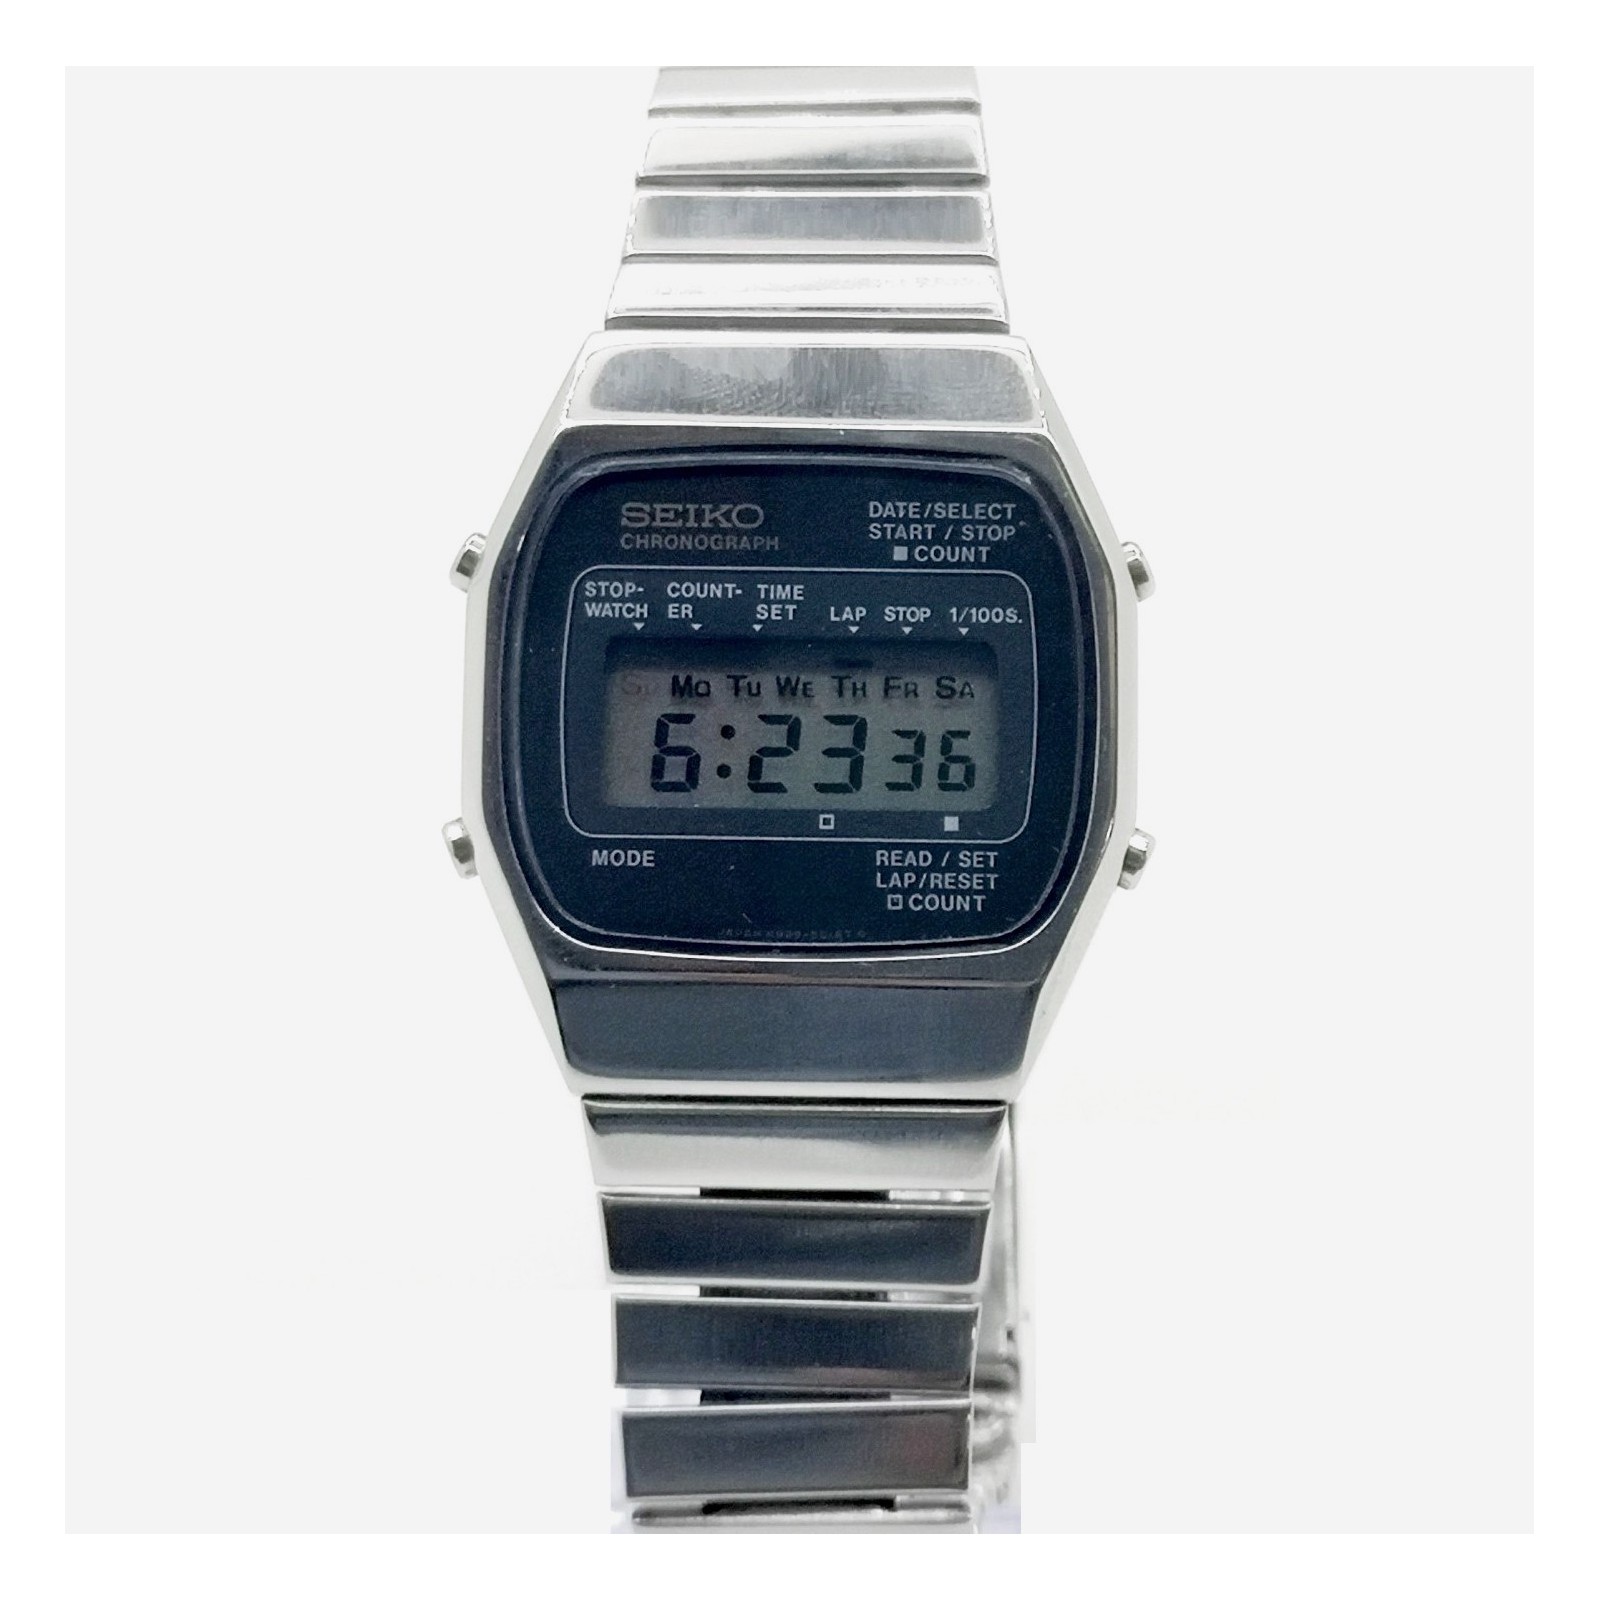 Reloj Seiko Digital Chronograph M929-5010 LCD (reloj raro) de segunda mano